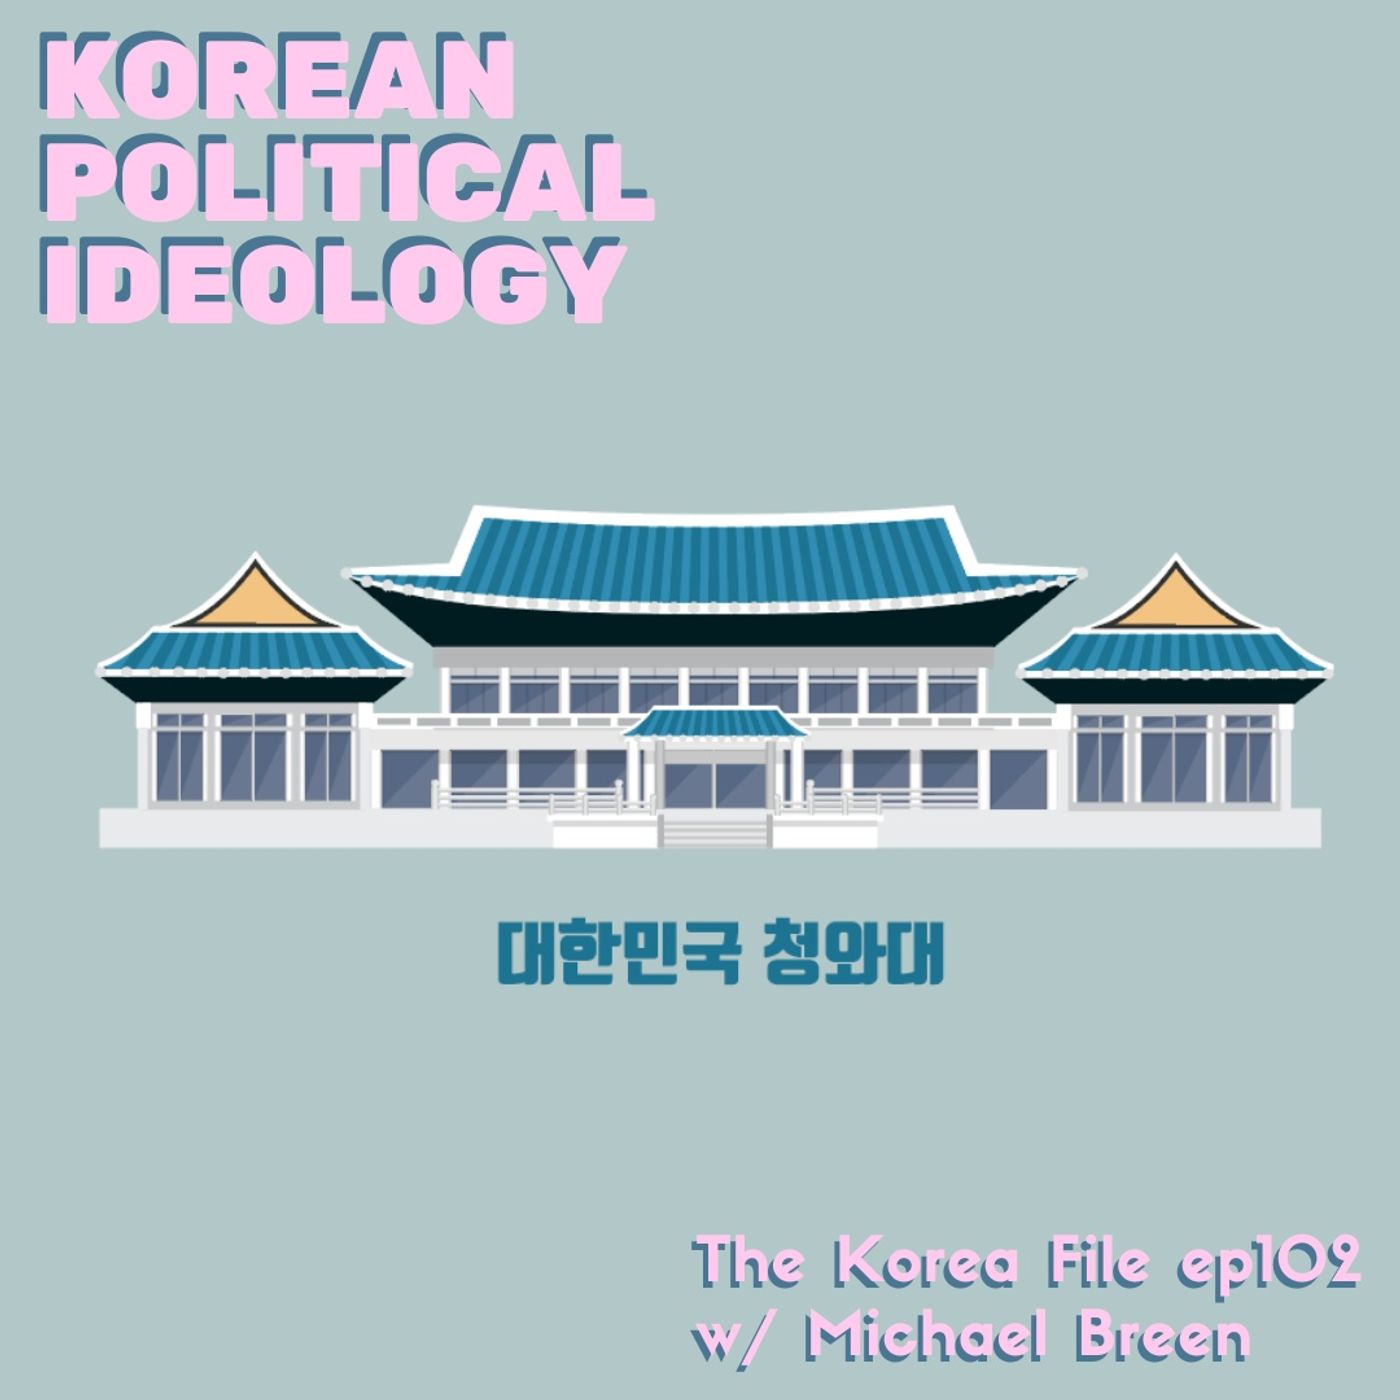 Understanding Korean Political Ideology (w/ Michael Breen)